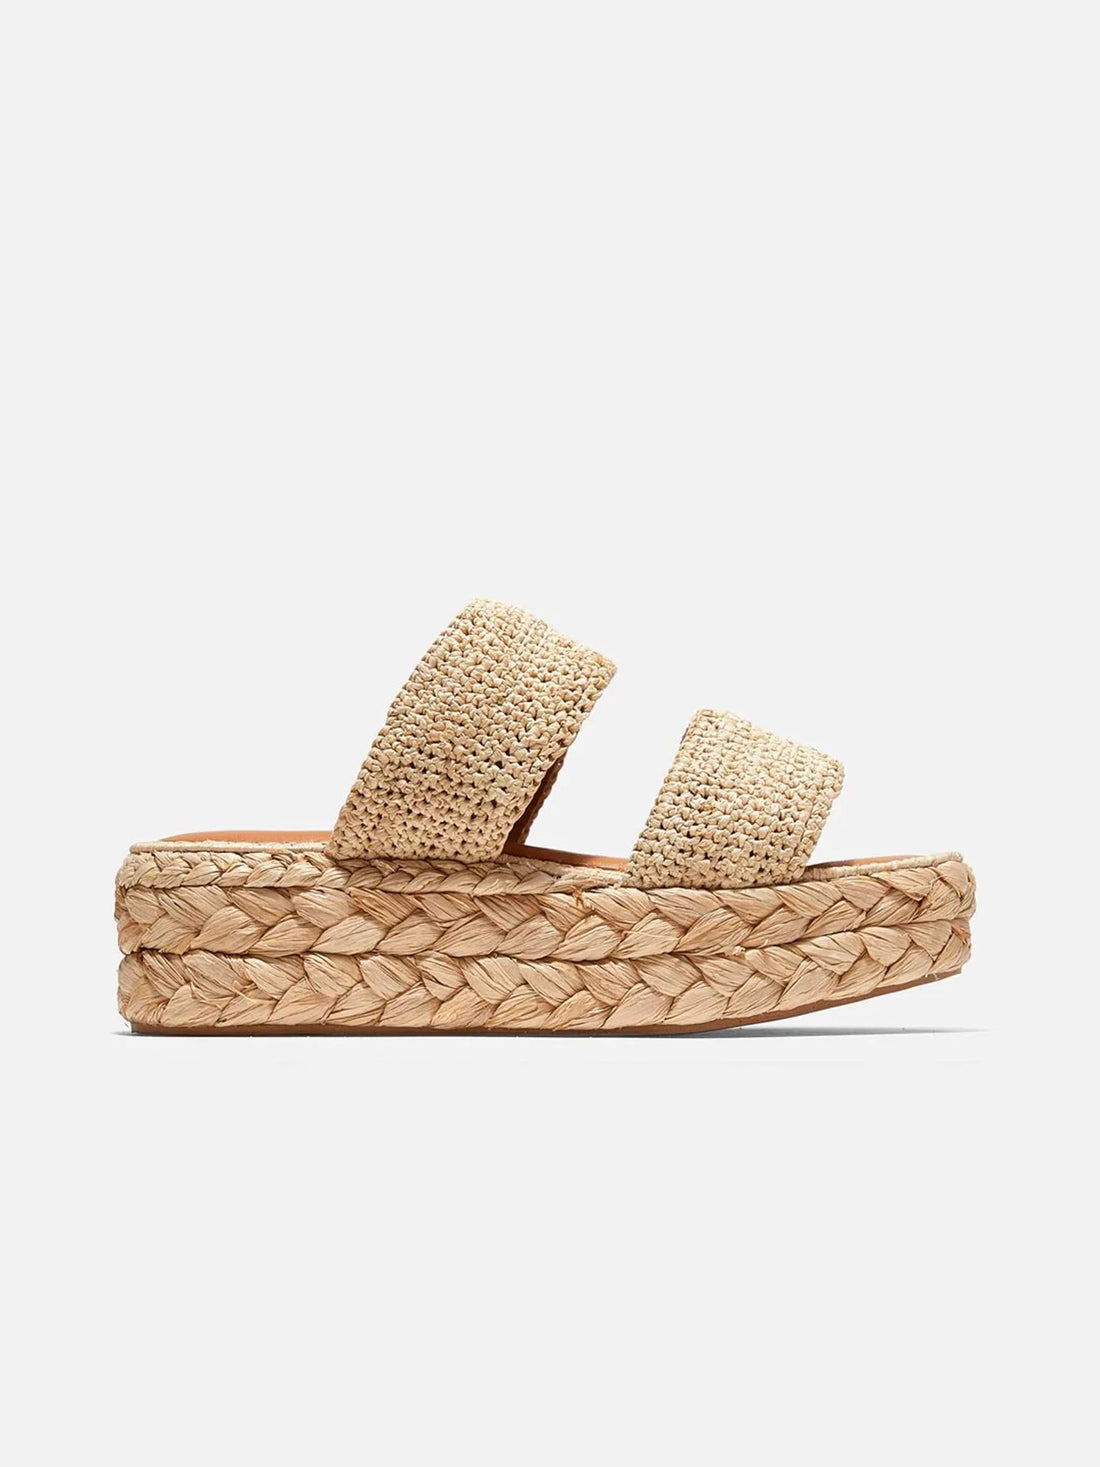 ARLENE slippers, natural straw